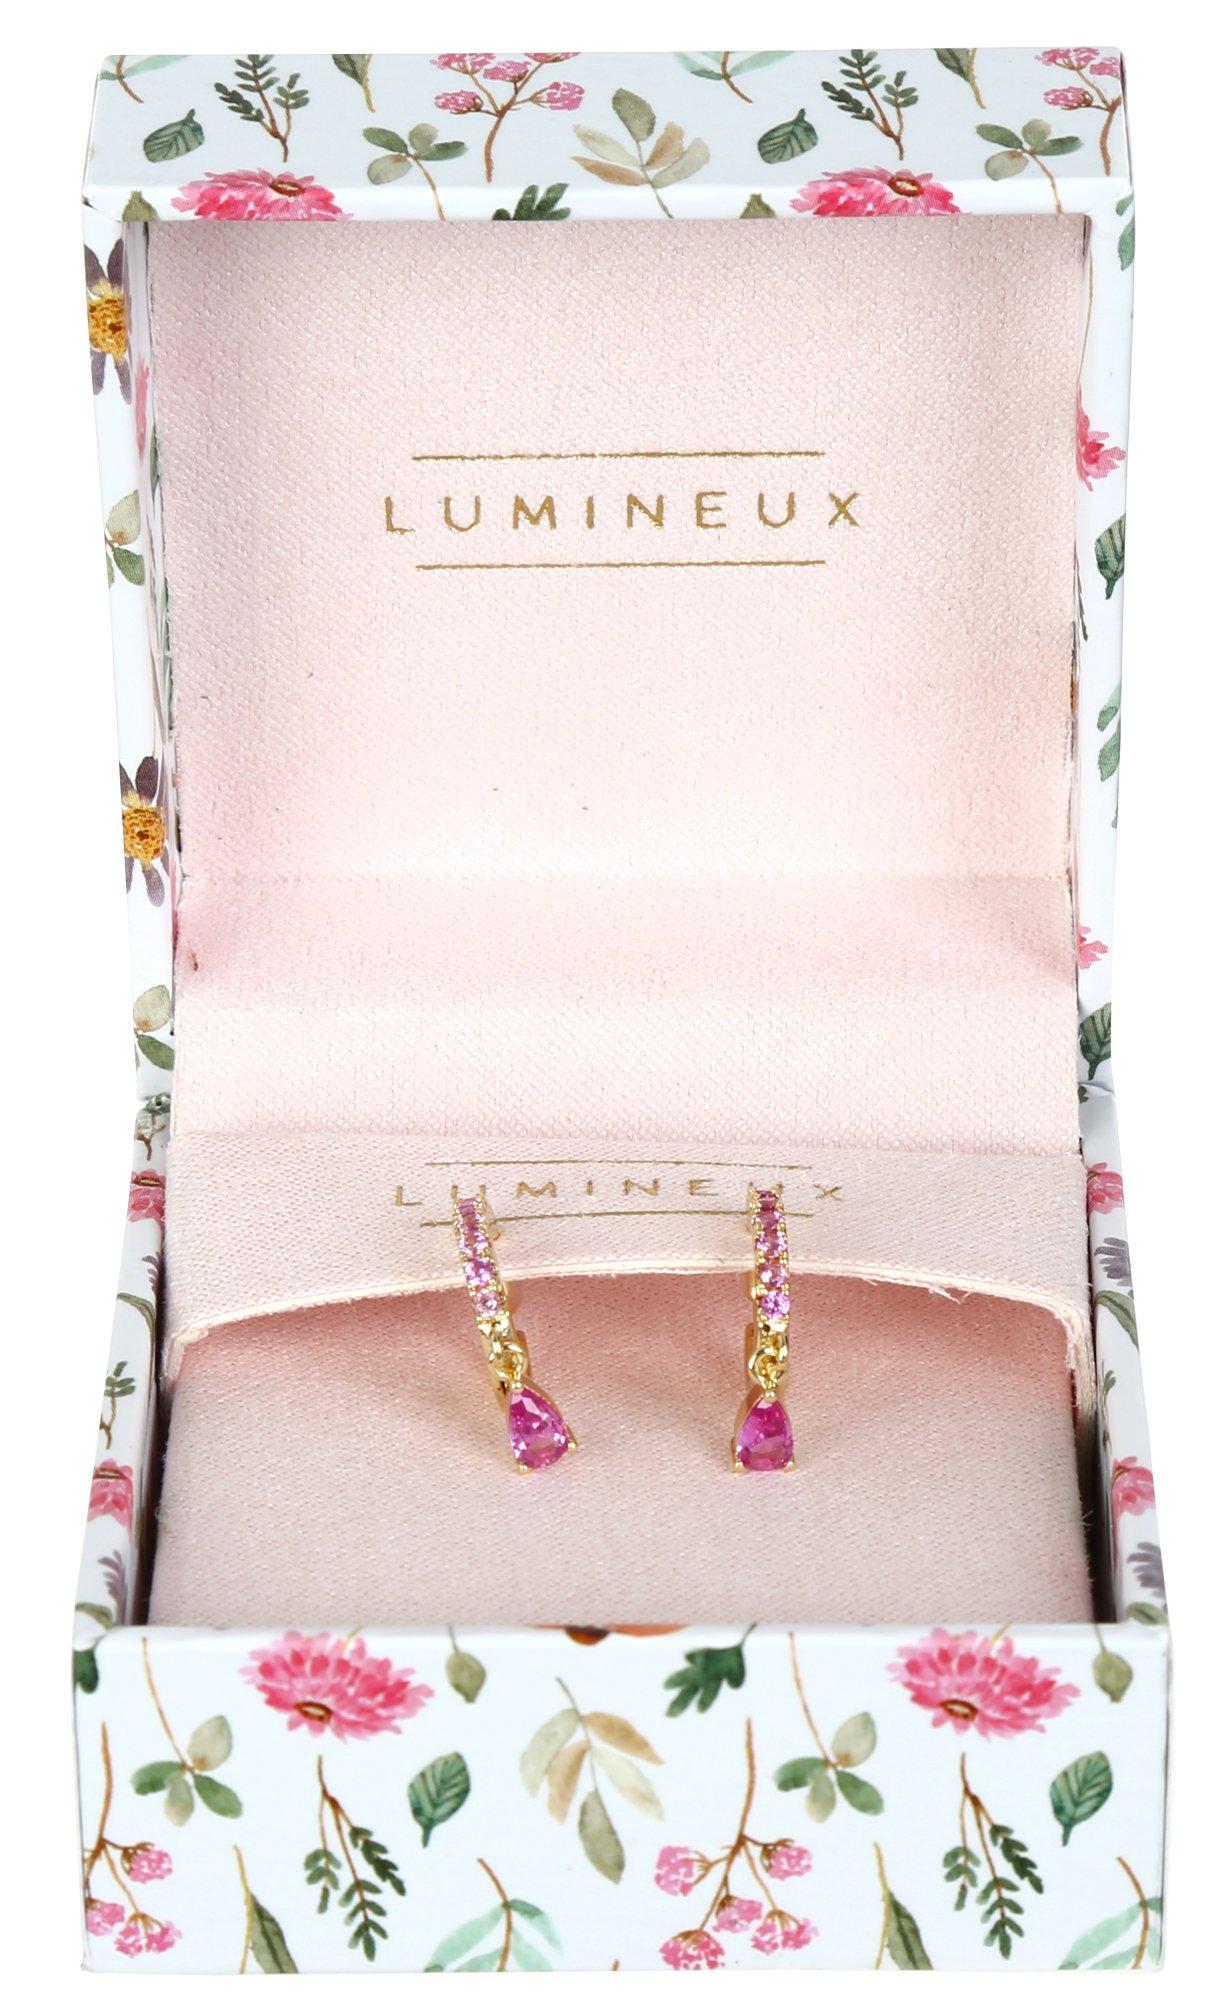 Pink Gemstone Hoop Earrings